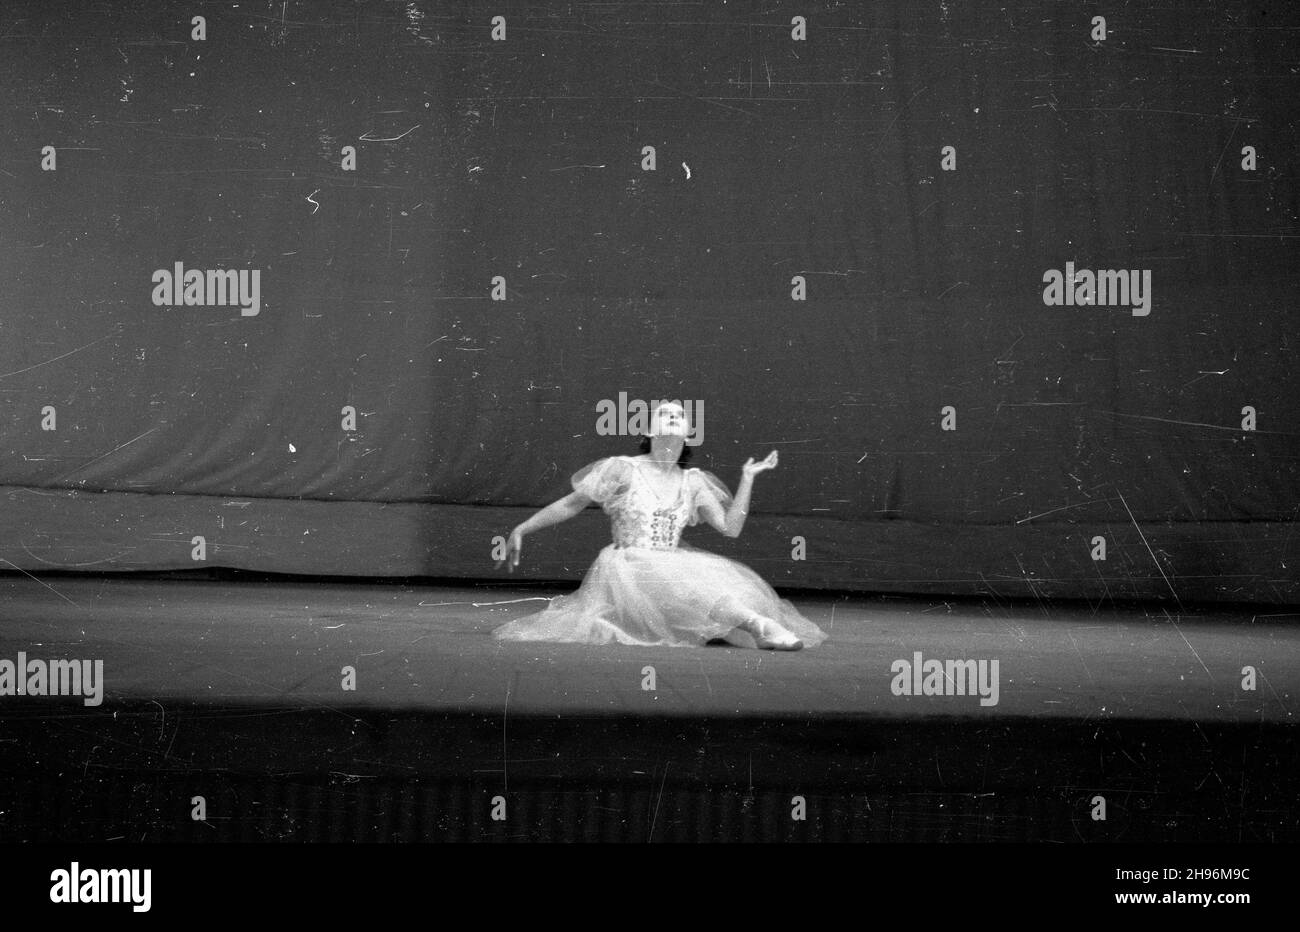 Warszawa, 1947-08-30. Wystêpy tancerzy radzieckich w Teatrze Wielkim. bb/mgs  PAP      Warsaw, Aug. 30, 1947. Performance of Soviet dancers in the Grand Theatre.  bb/mgs  PAP Stock Photo